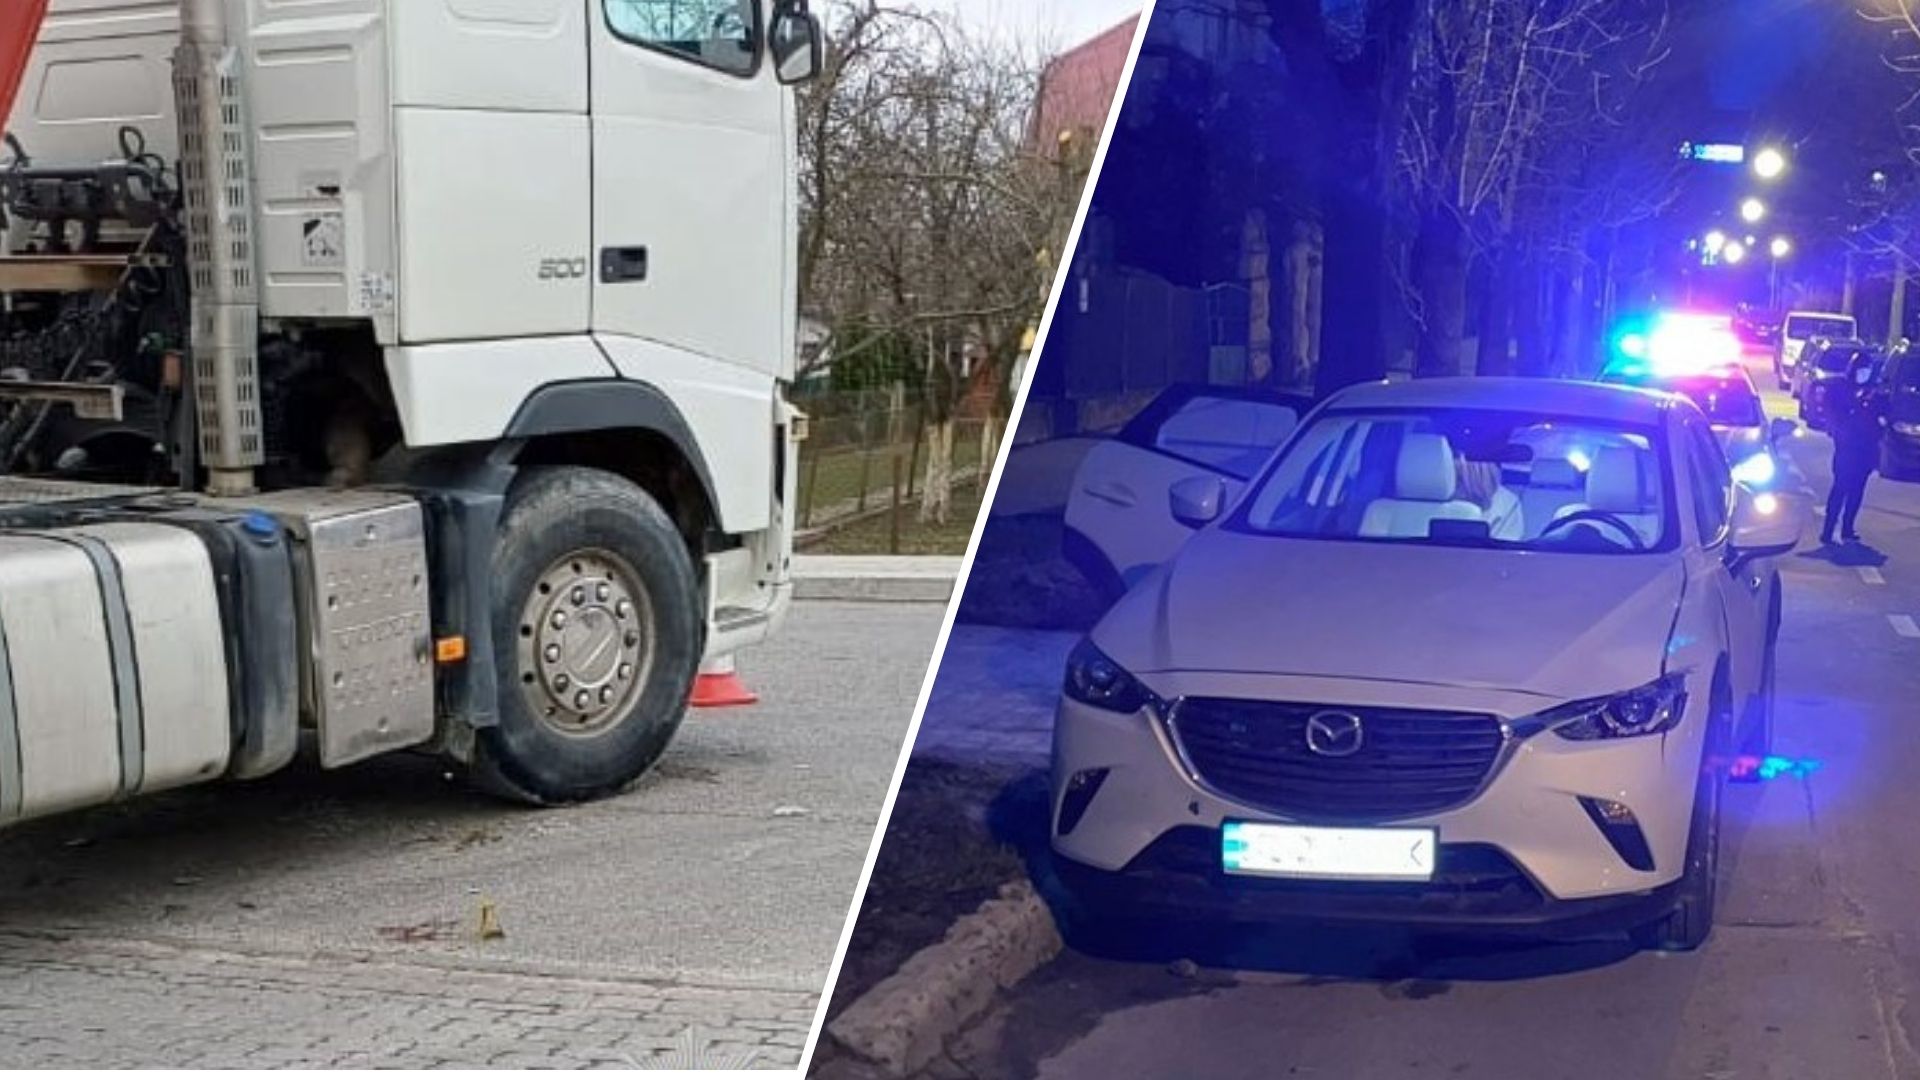 Az elmúlt nap folyamán három gyalogos sérült meg a Lvivi területen. A rendőrség megállapítja az incidensek körülményeit, és ismételten felszólítja a gyalogosokat a közlekedési szabályok betartására.